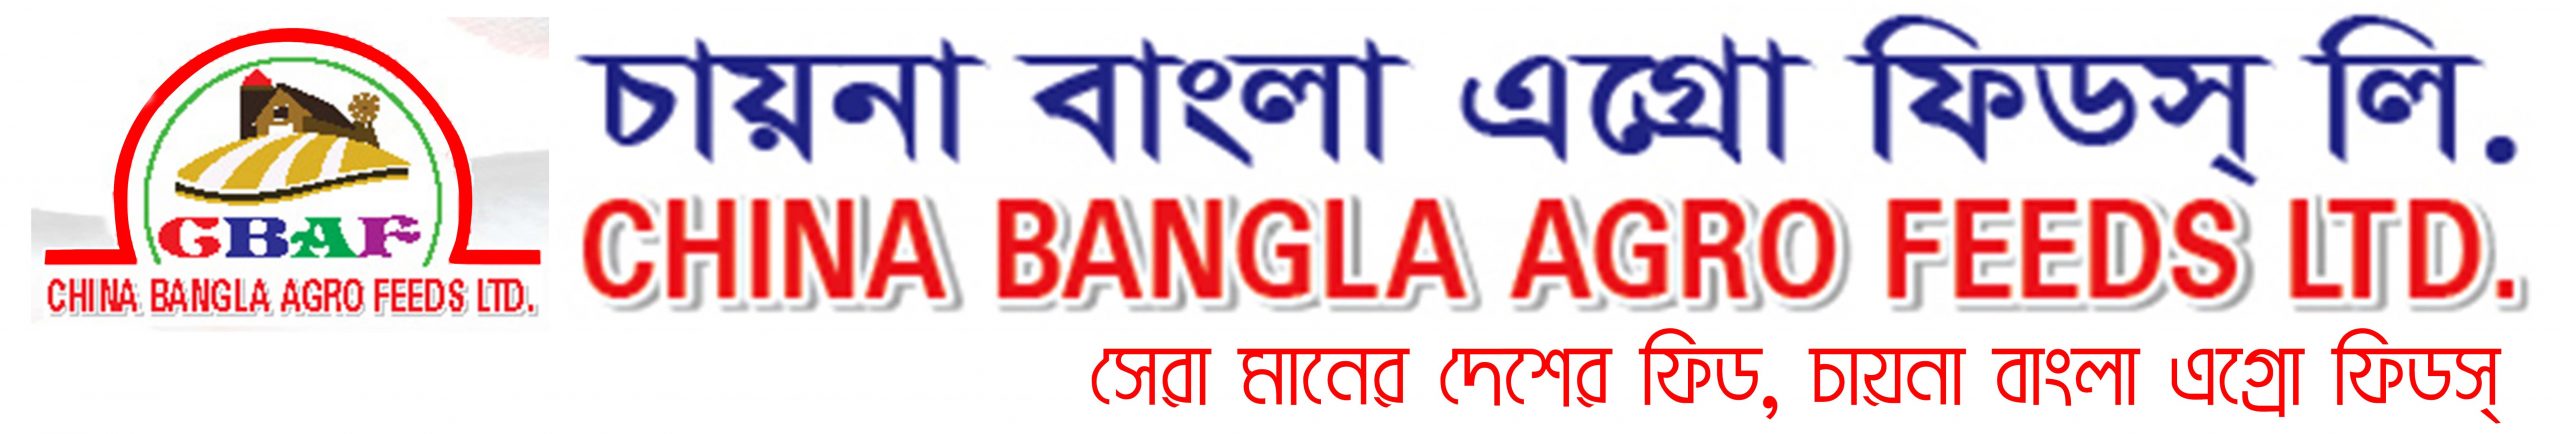 China Bangla Agro Feed